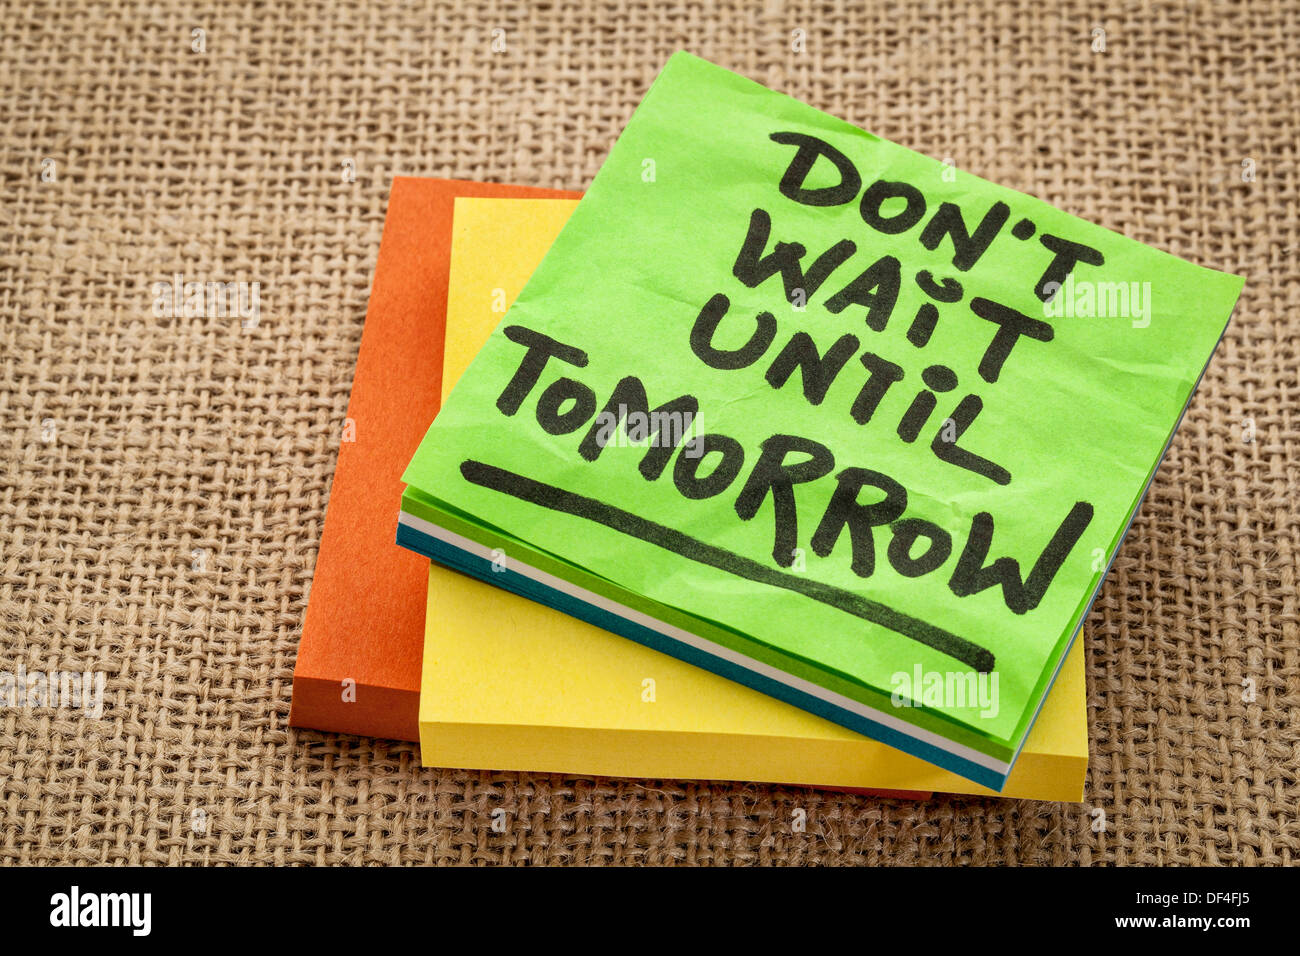 warten Sie nicht bis morgen - Motivations-Erinnerung - Handschrift auf Zettel Stockfoto